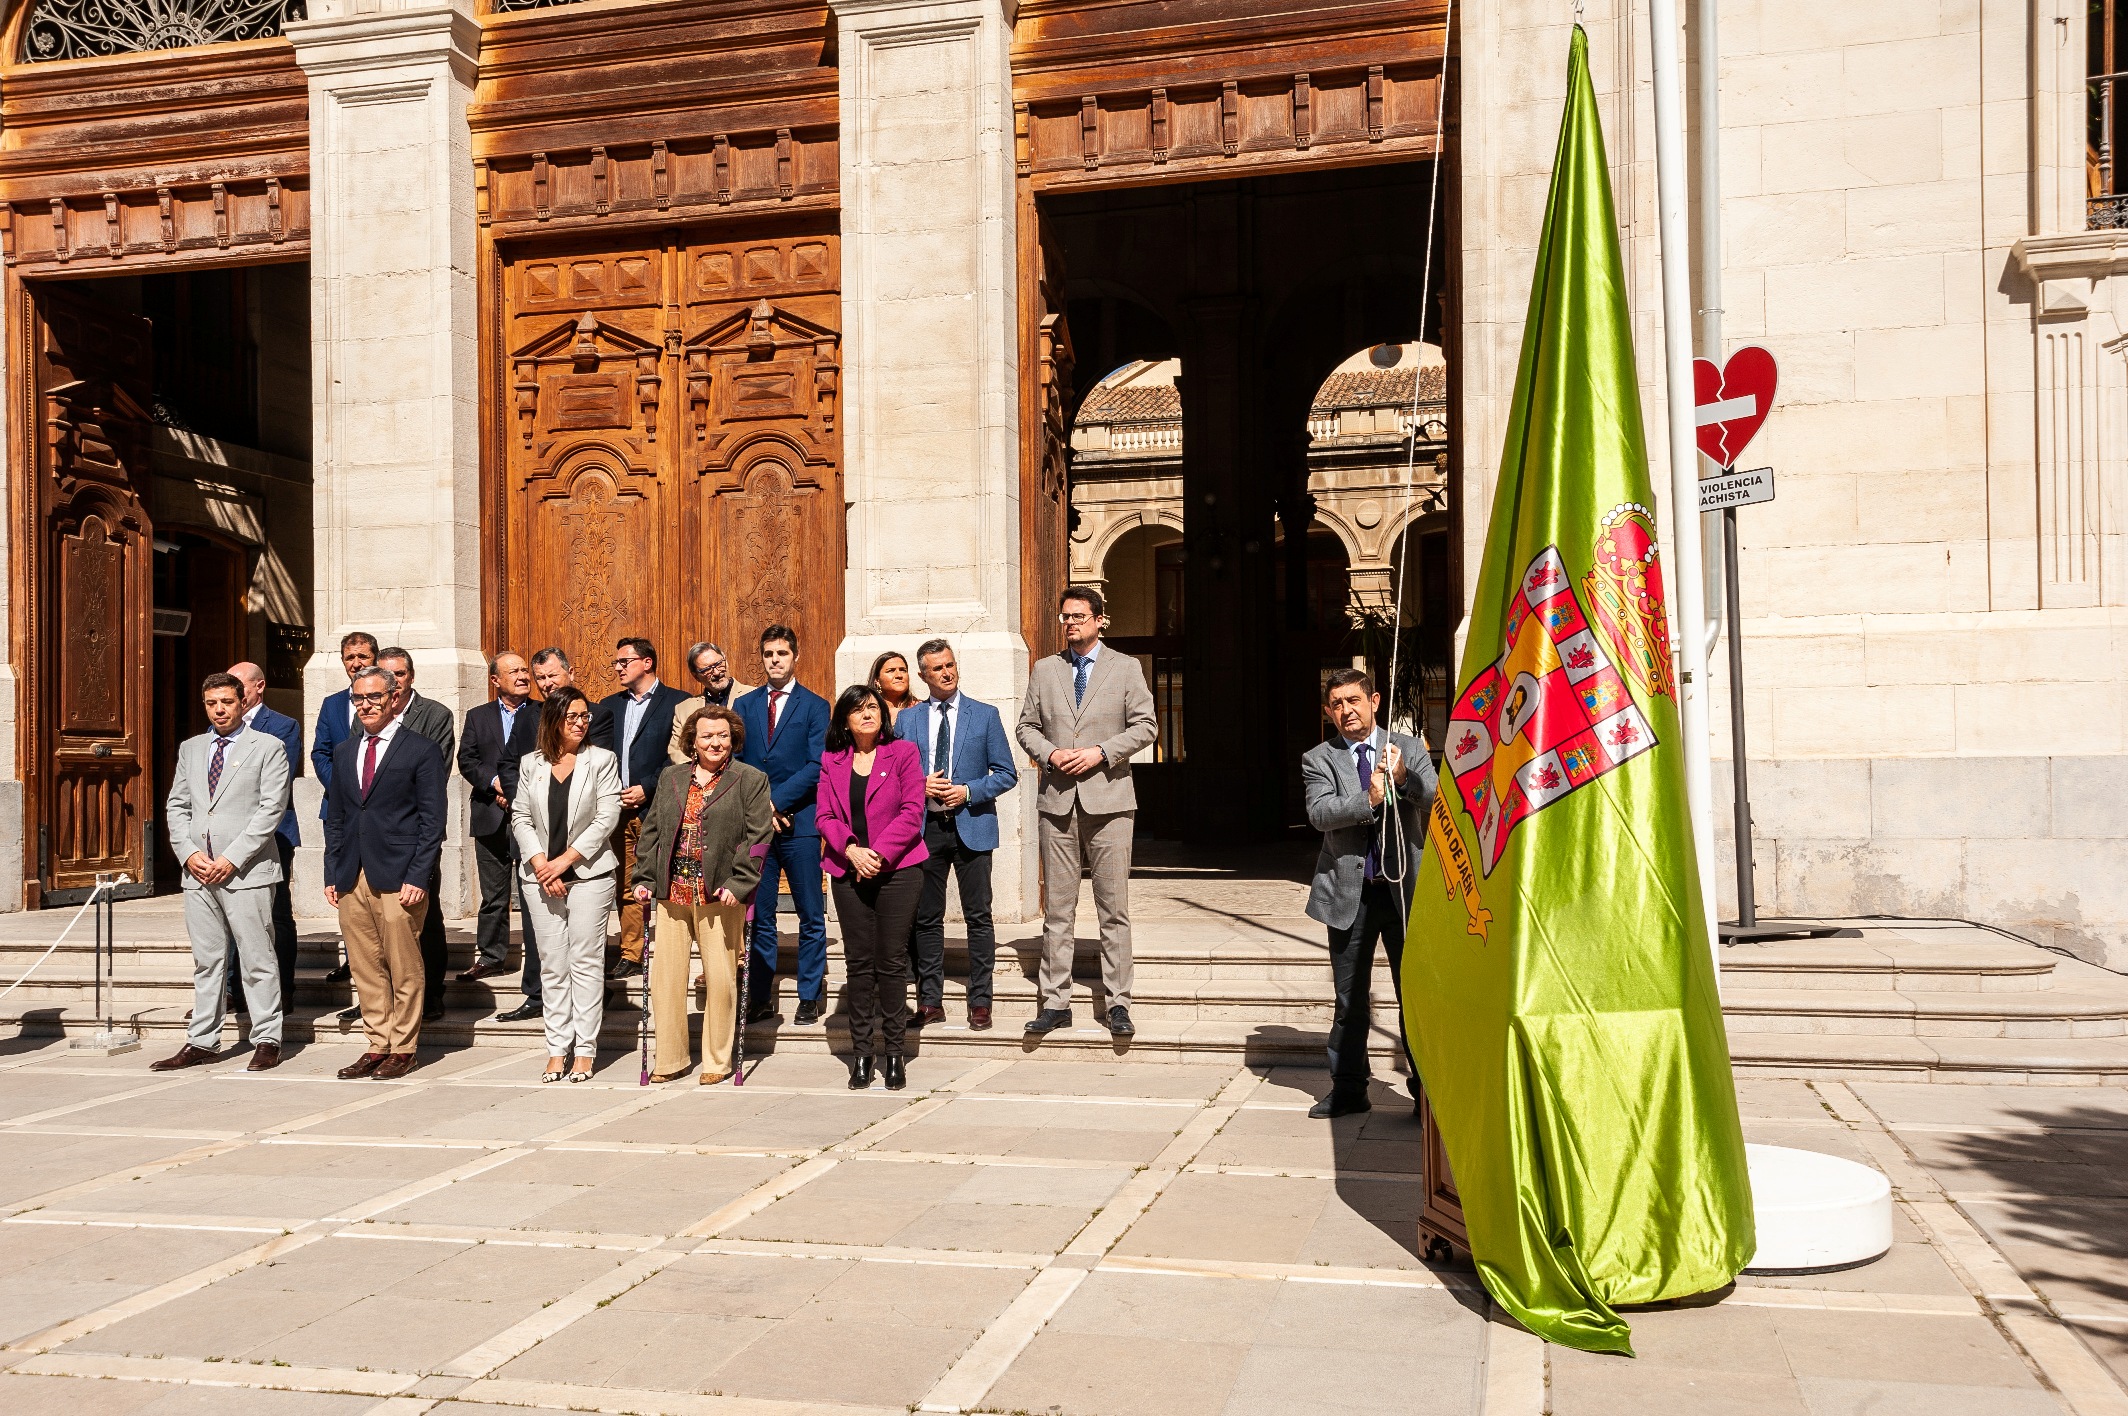 El presidente de la Diputación, con miembros de la Corporación provincial detrás. JPG de 1237 KB  | Imagen en ventana nueva | Diputación de Jaén 